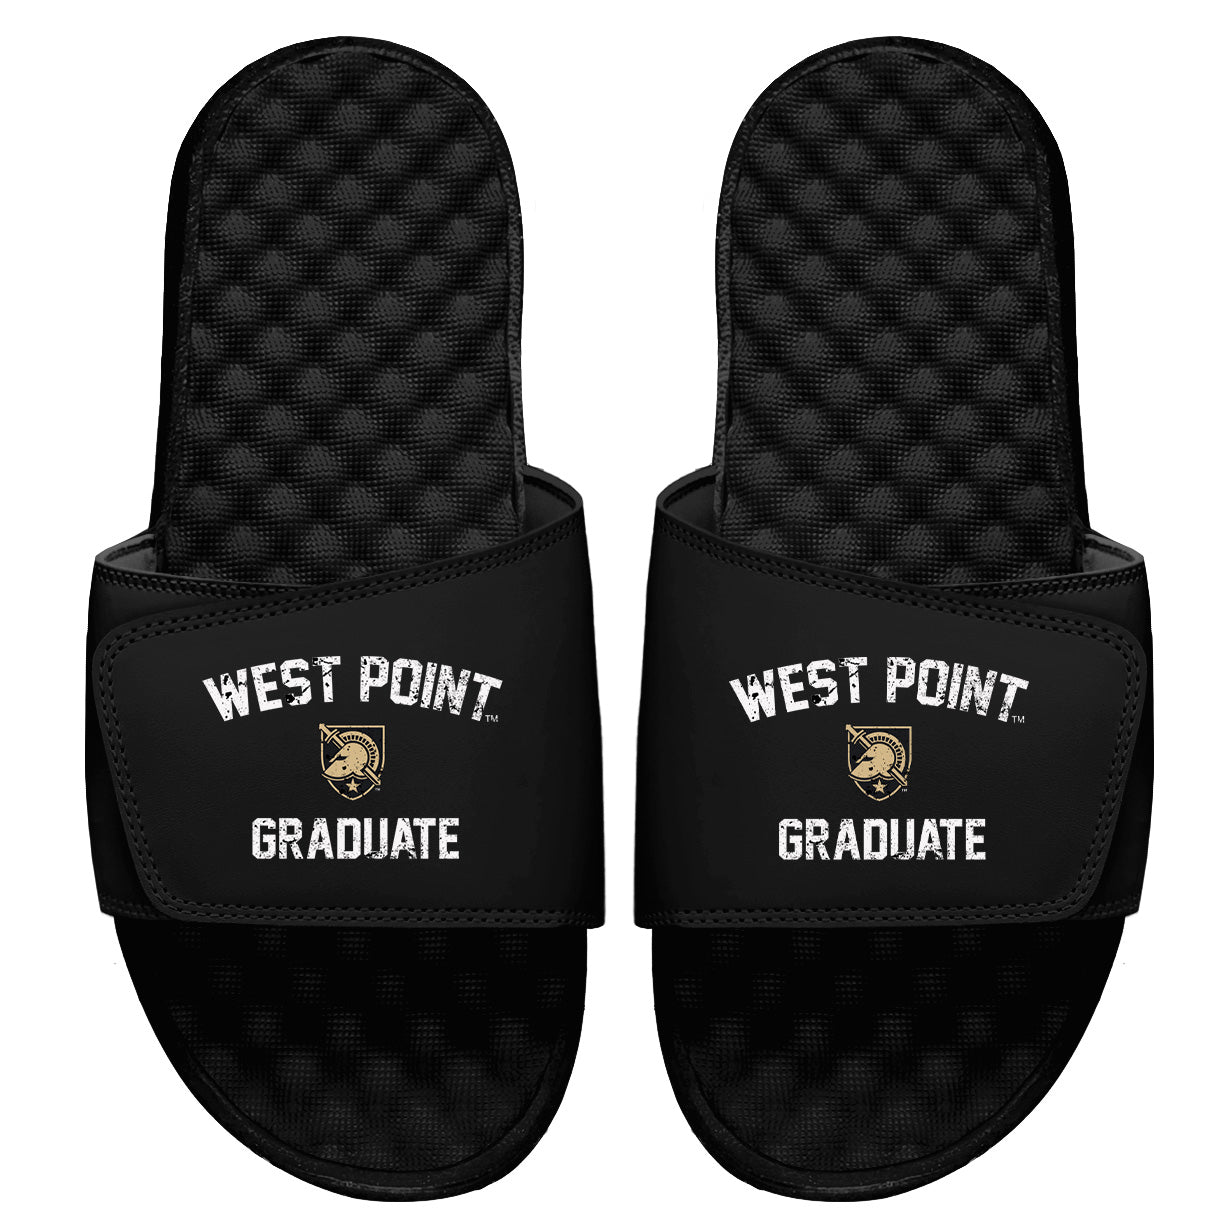 West Point Graduate Slides